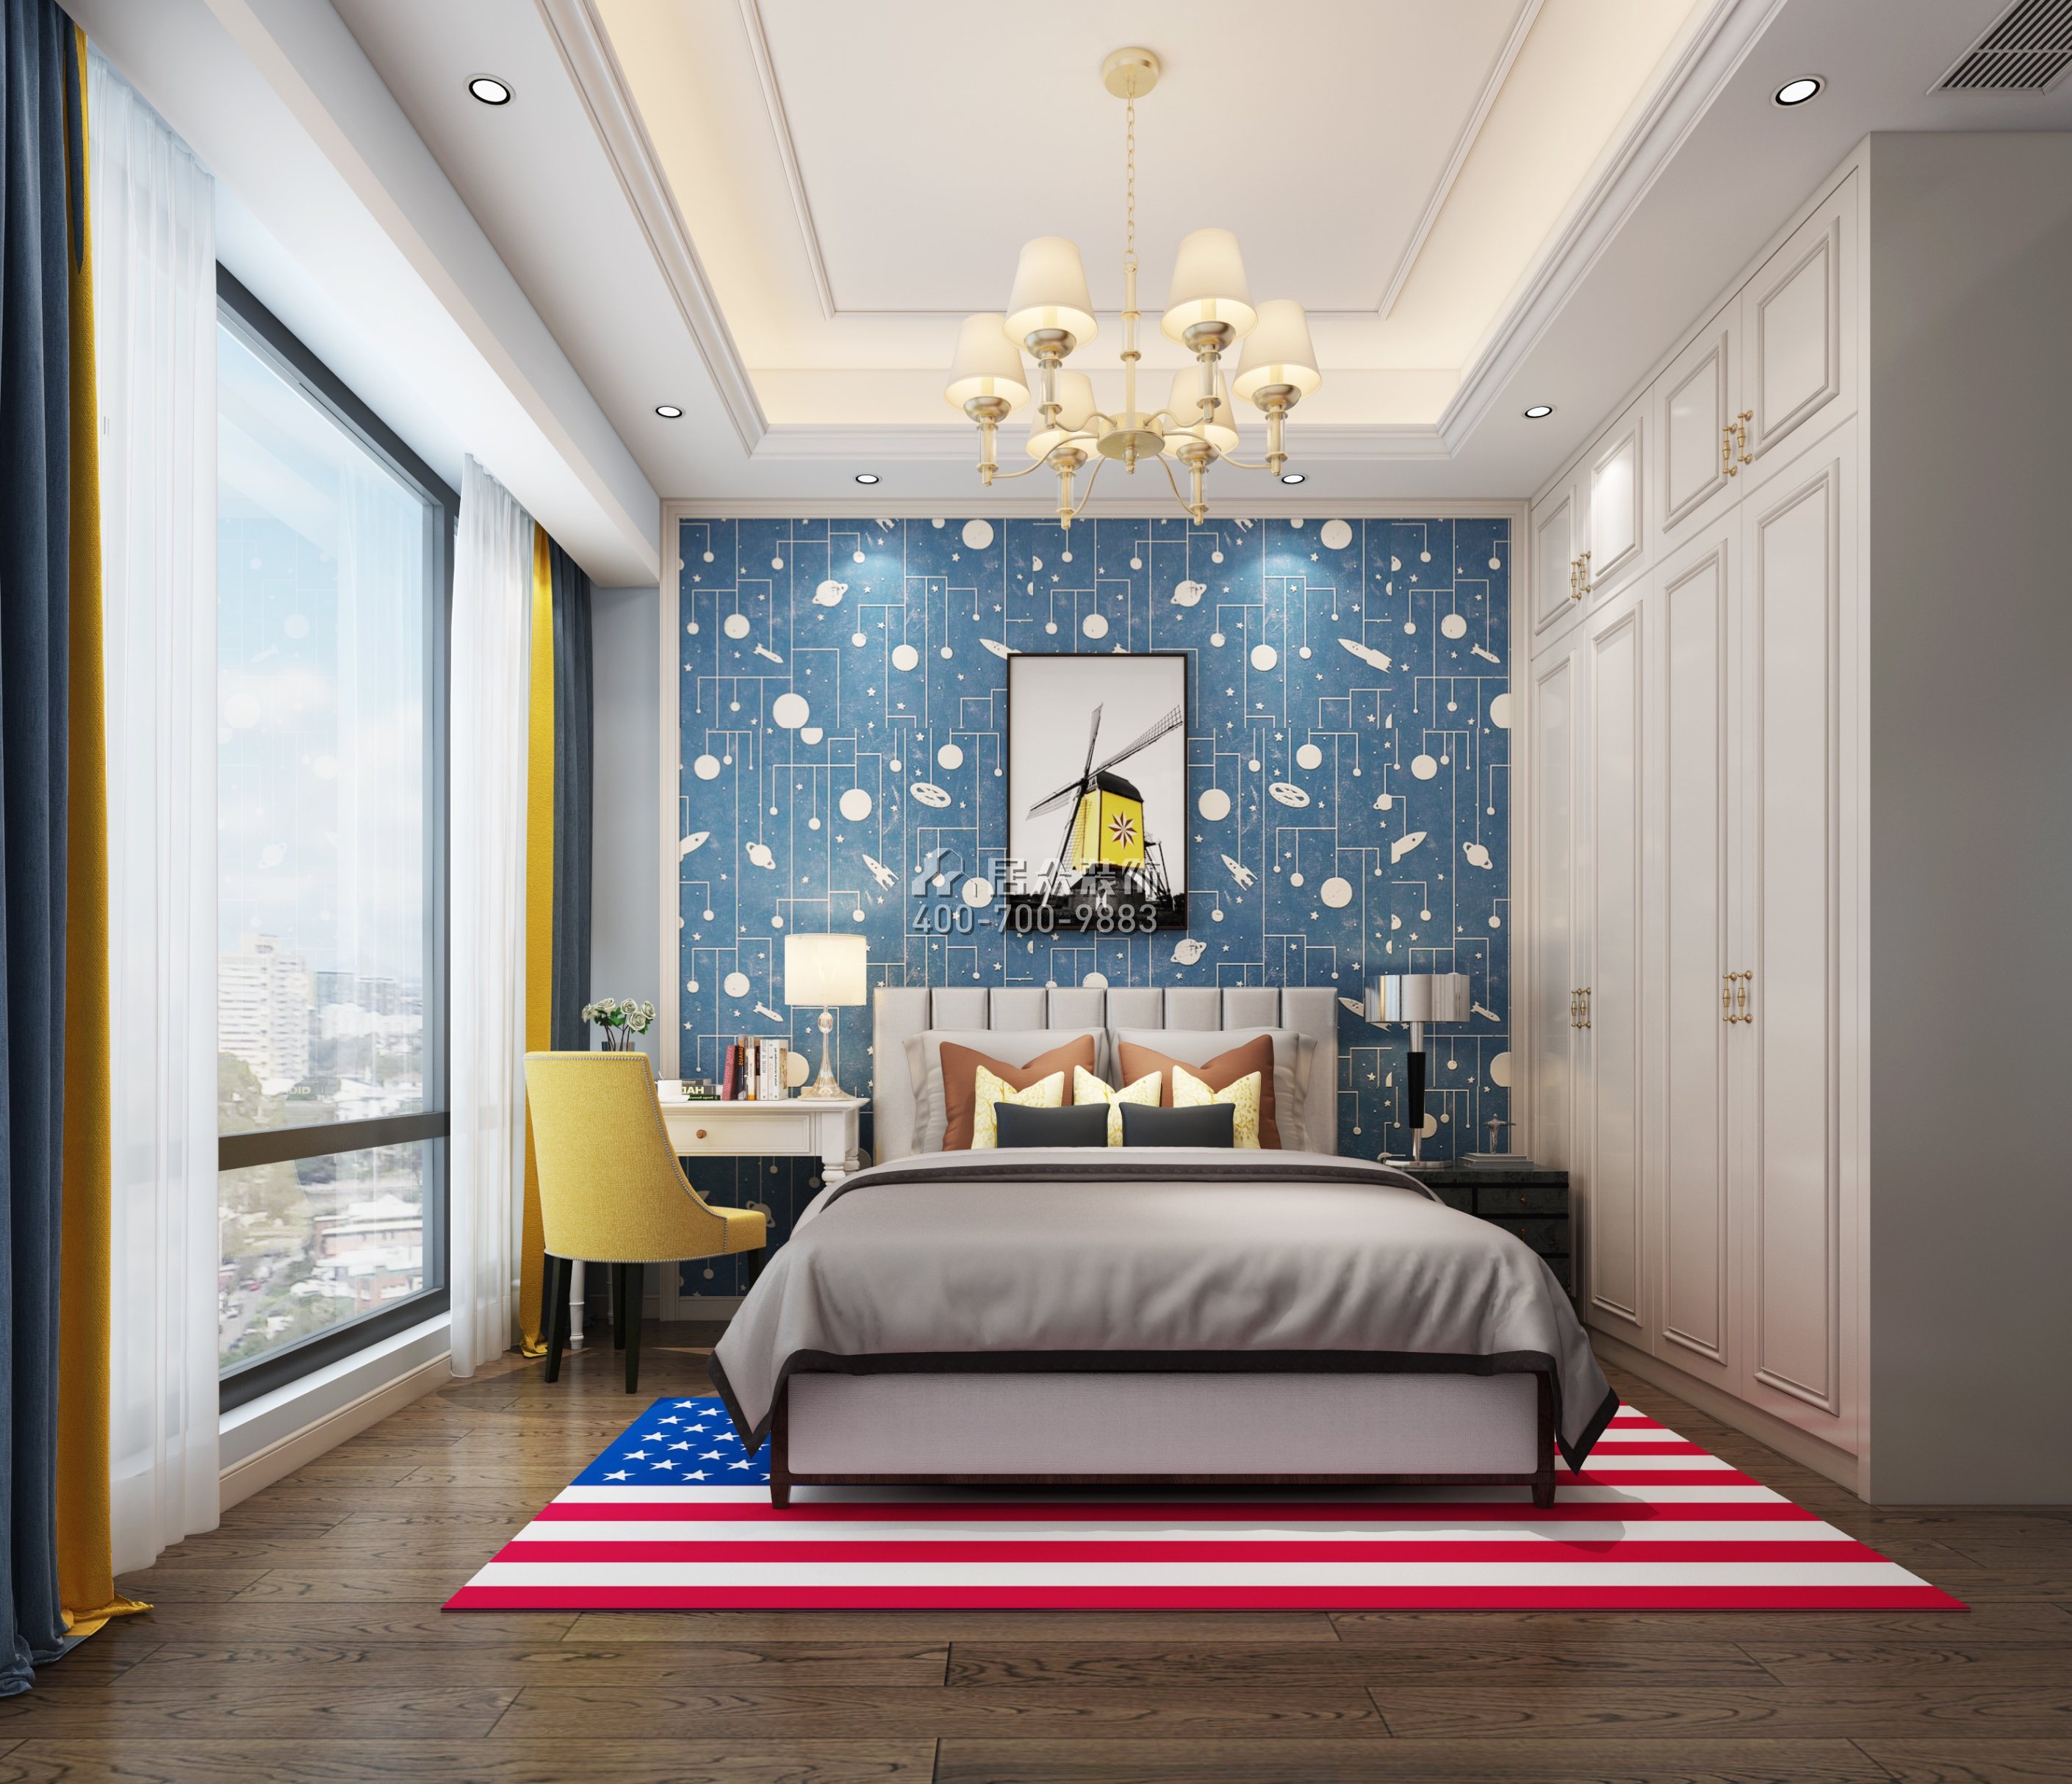 天鹅湖花园二期293平方米欧式风格平层户型卧室装修效果图